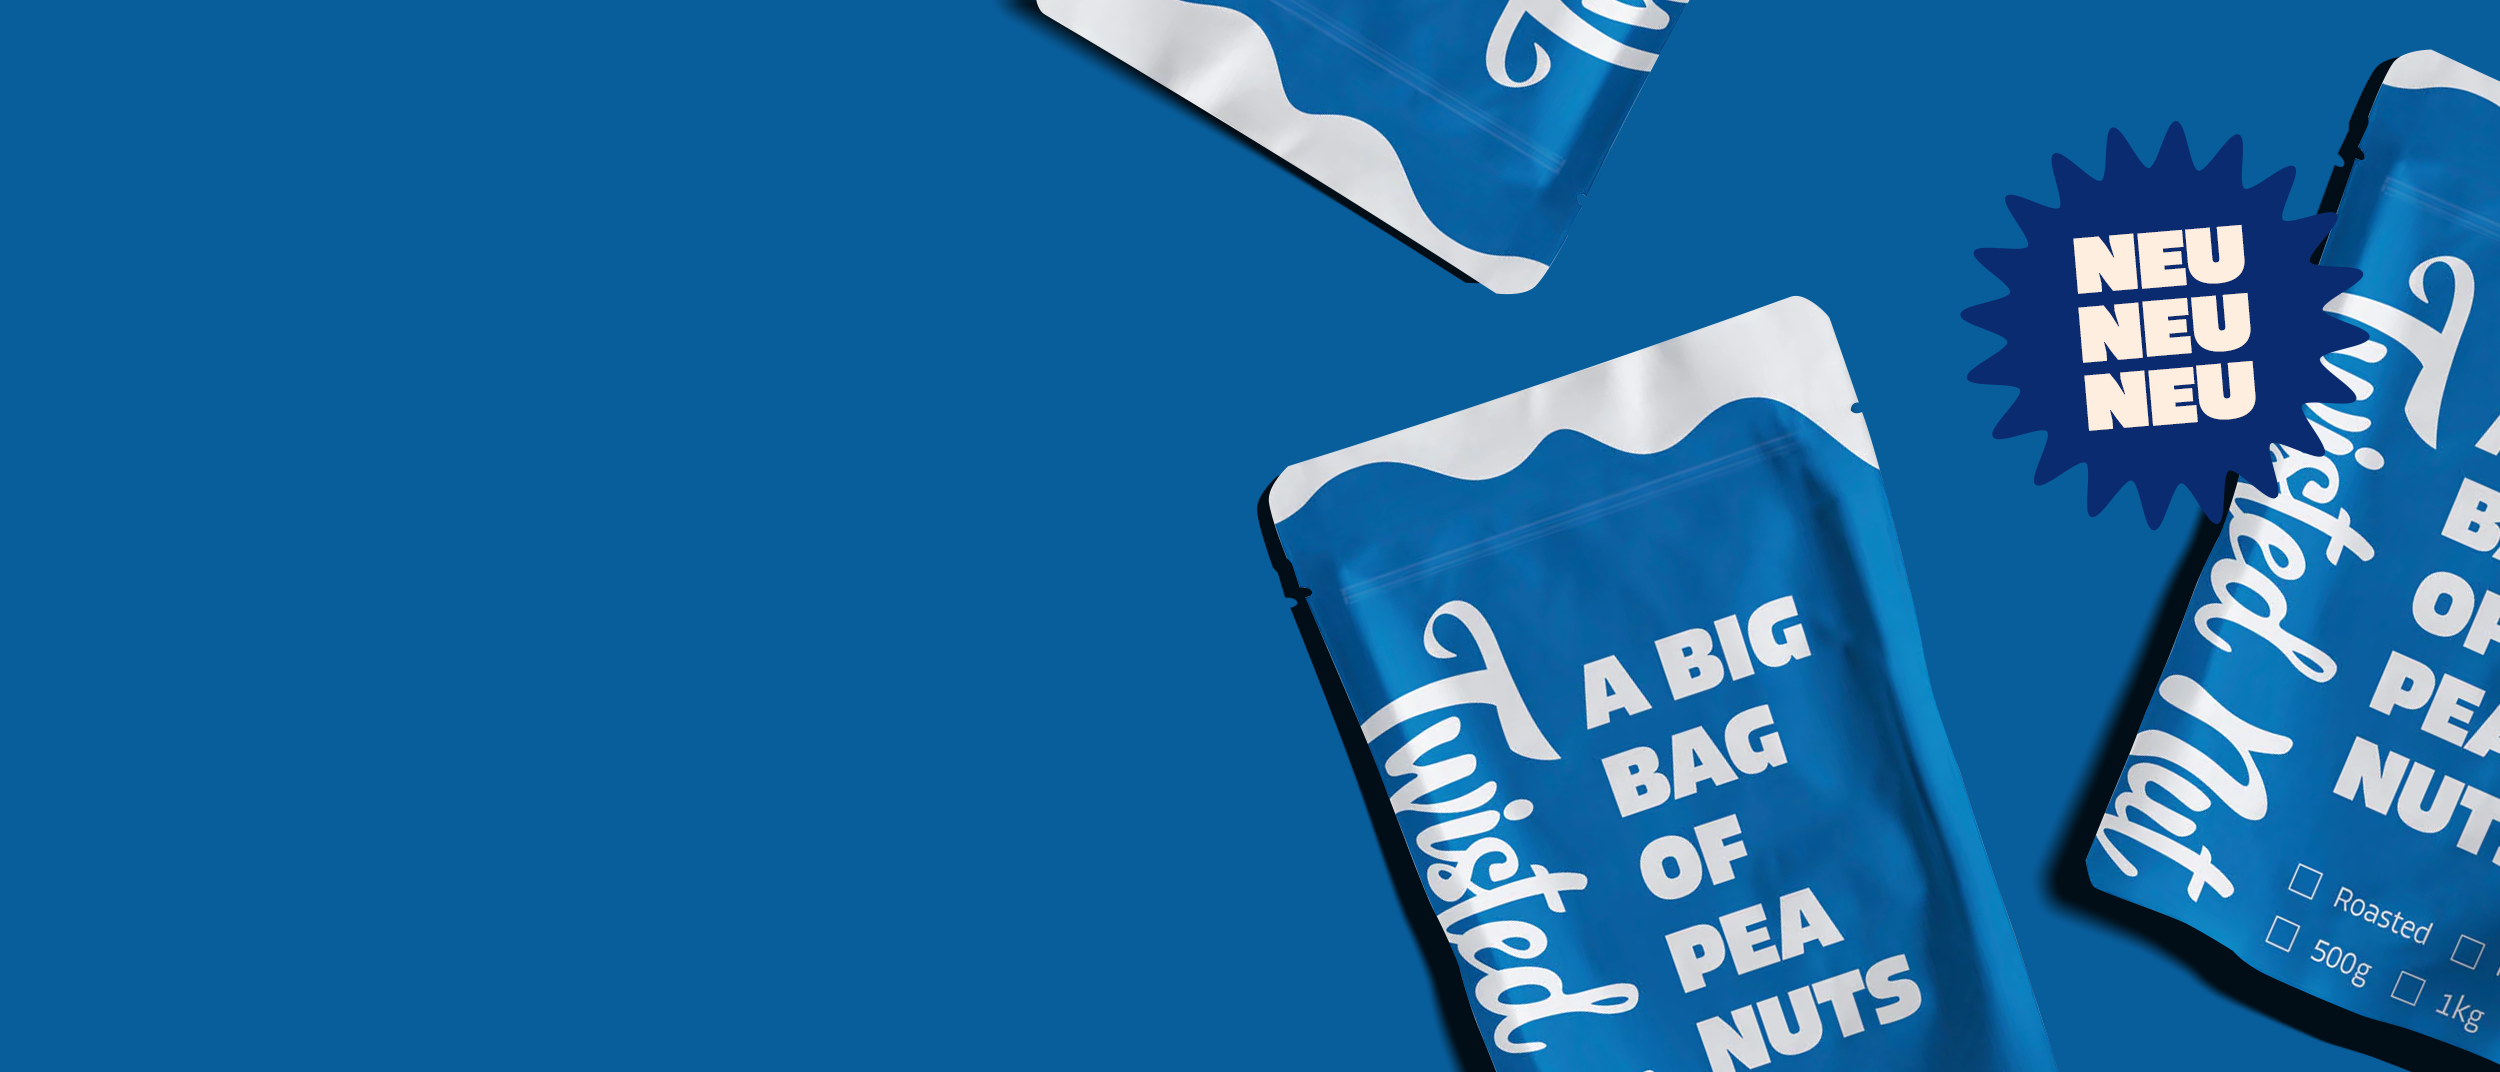 Header-Grafik mit 3 Tüten "Big bag of peanuts" auf blauem Hintergrund